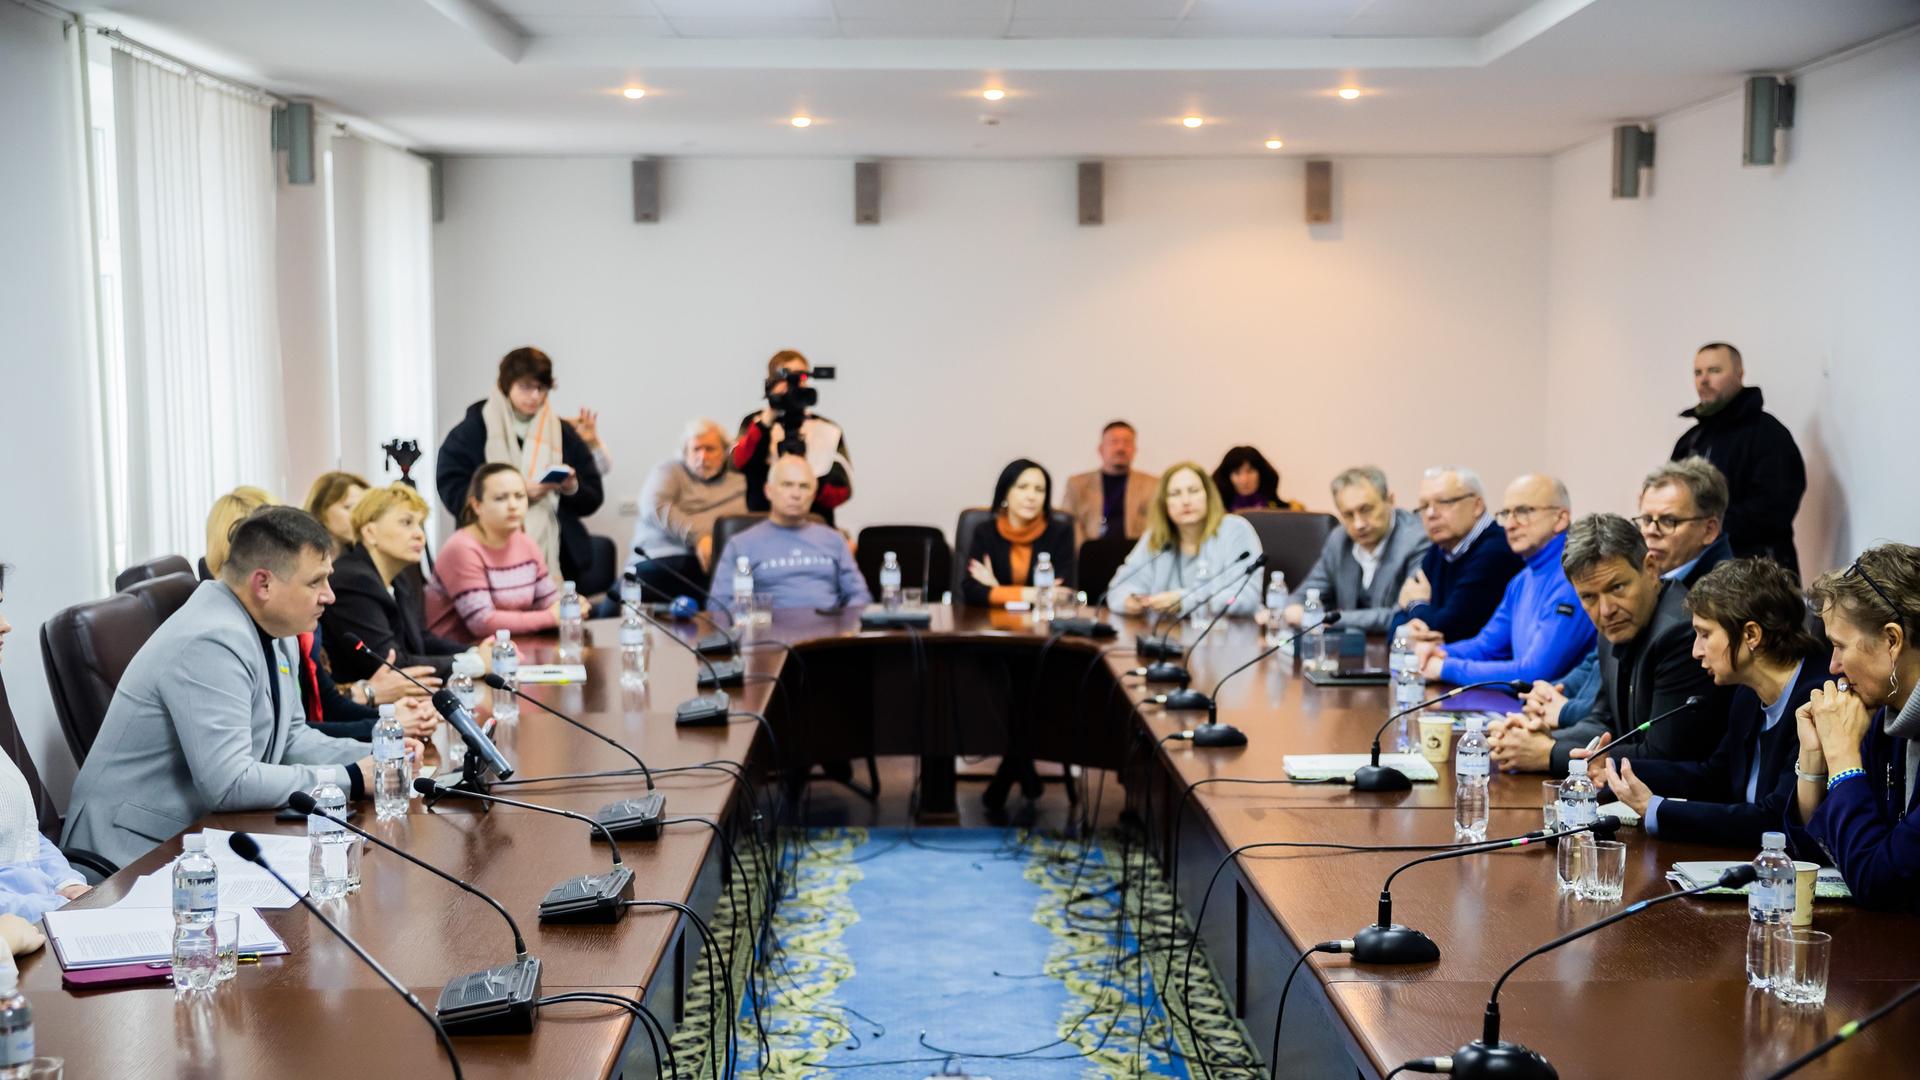 Ukraine, Slawutytsch: Bundeswirtschaftsminister Habeck mit Jurij Fomitschow (l), Bürgermeister der Gemeinde Slawutytsch und Mitarbeitern zusammen an einem Tisch. Vor ihnen stehen Mikrofone.